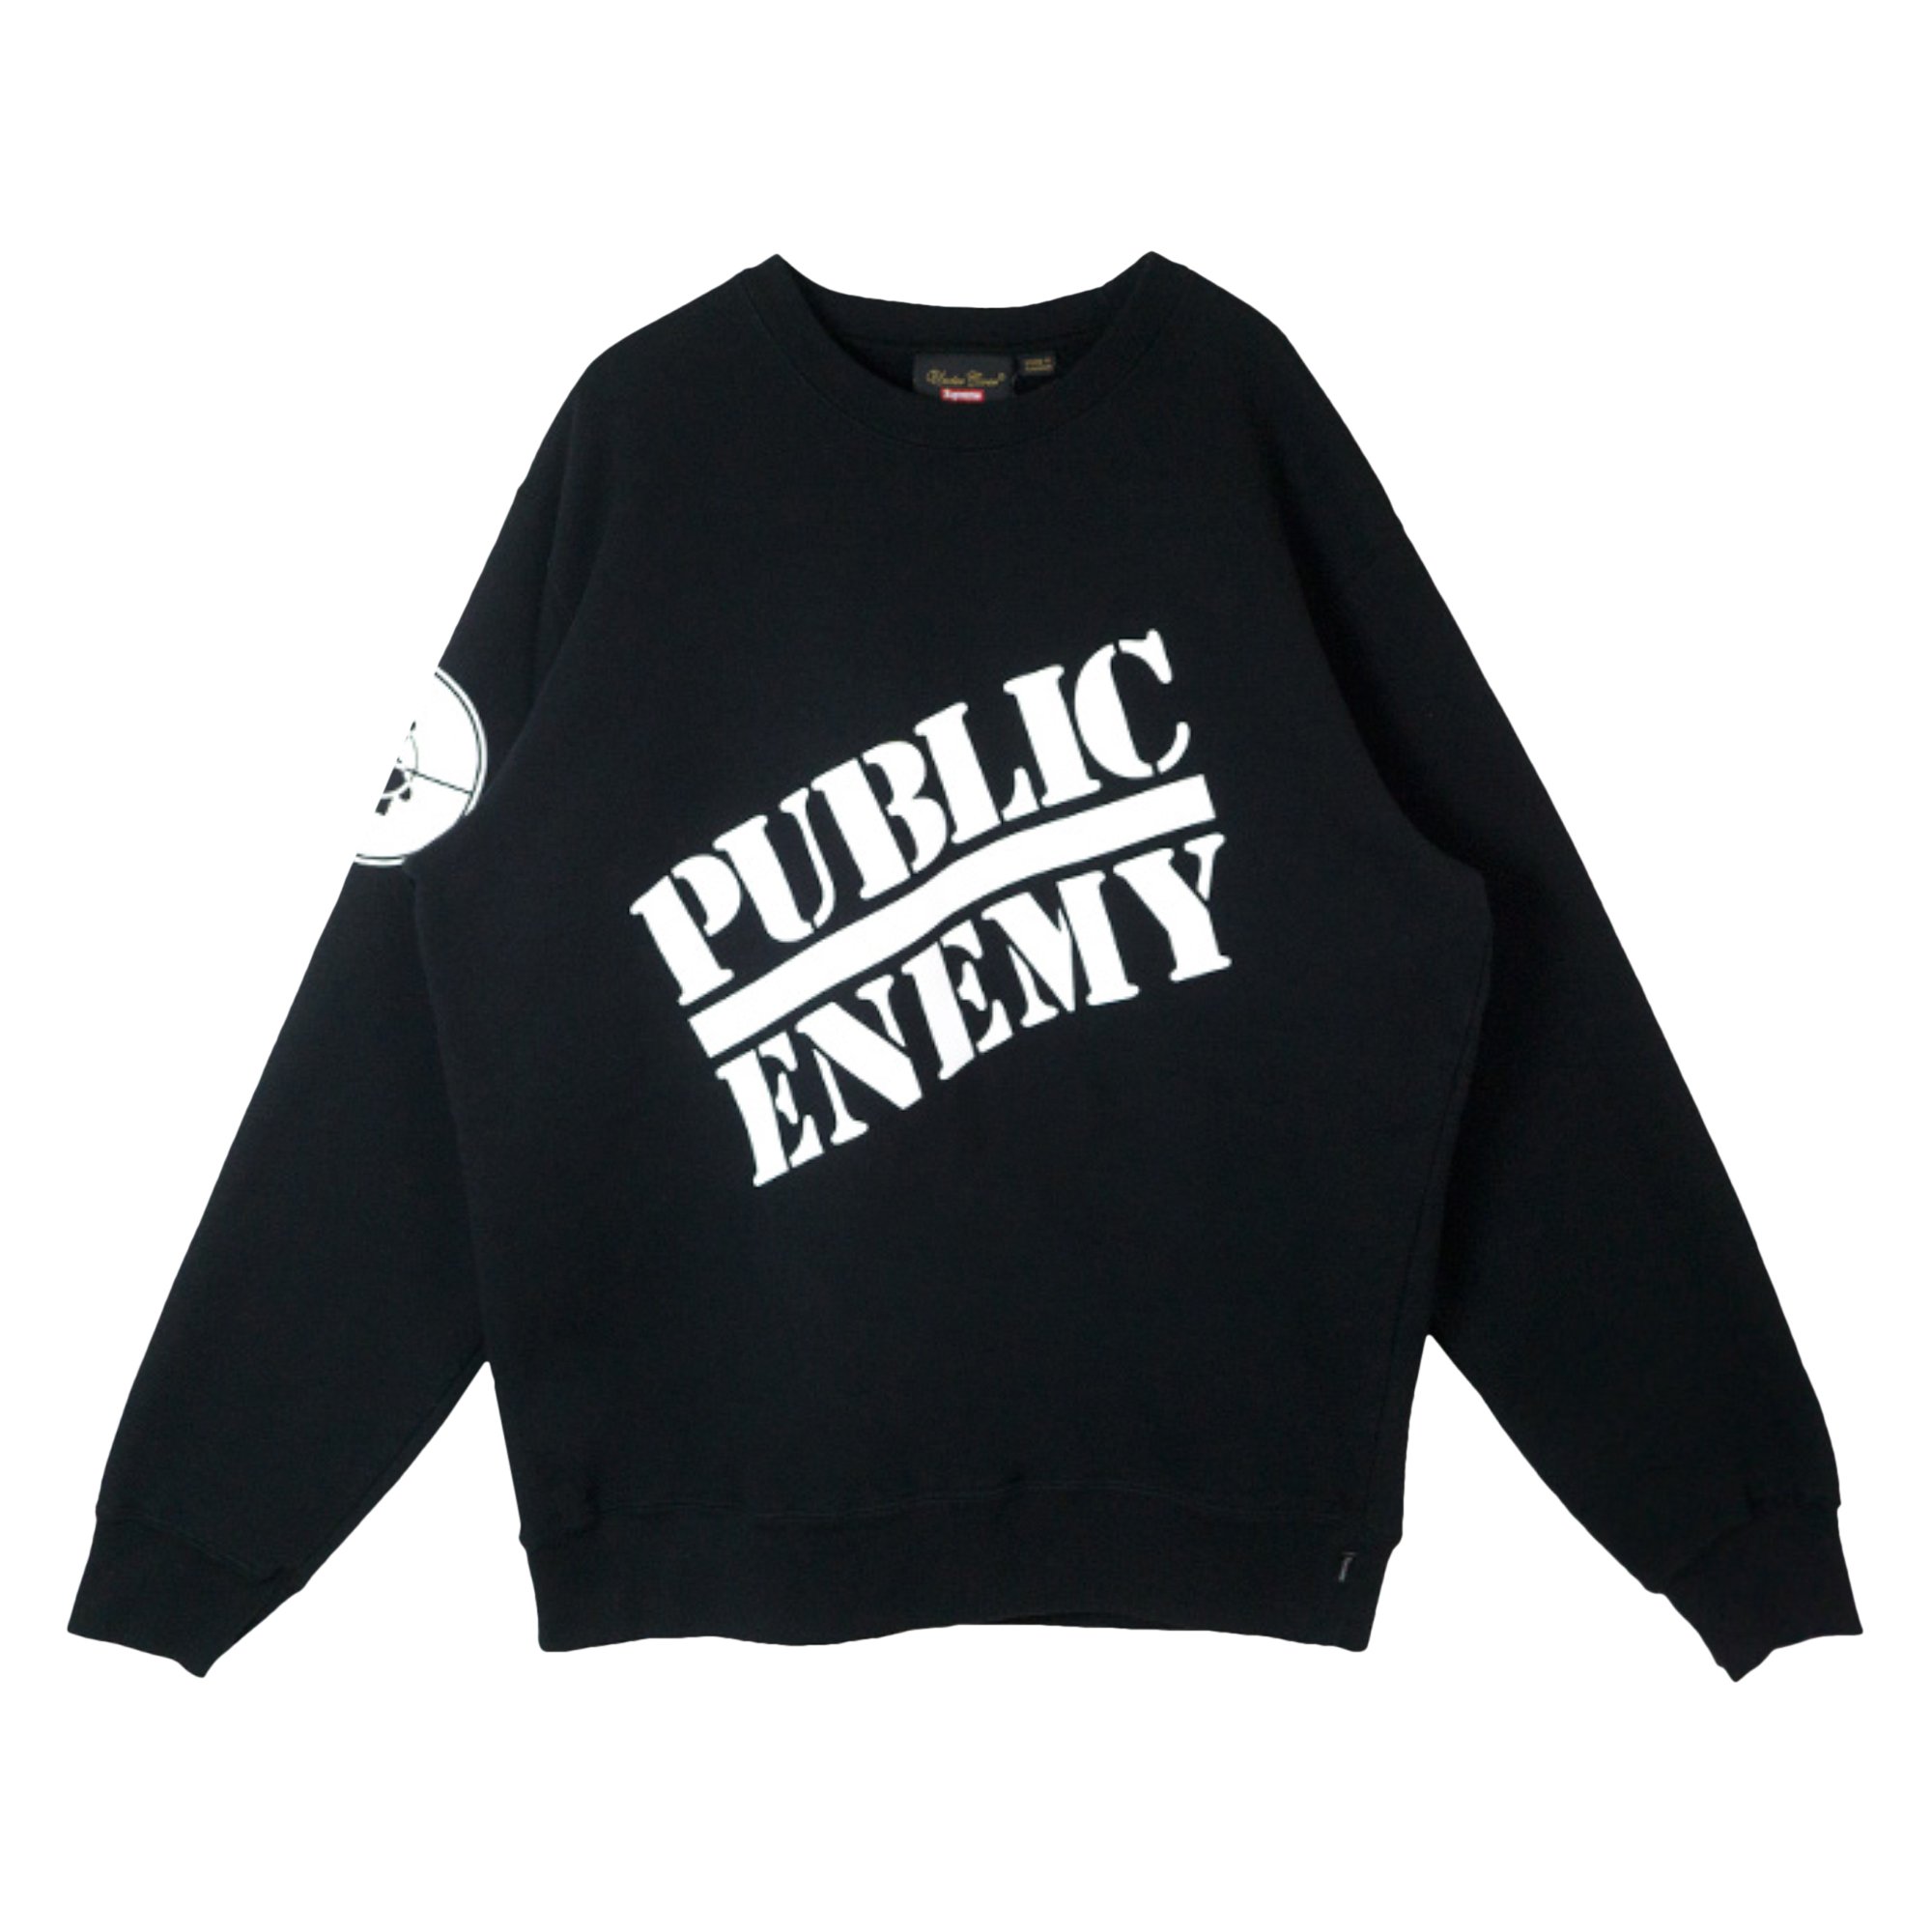 Buy Supreme x Undercover x Public Enemy Crewneck Sweatshirt 'Black